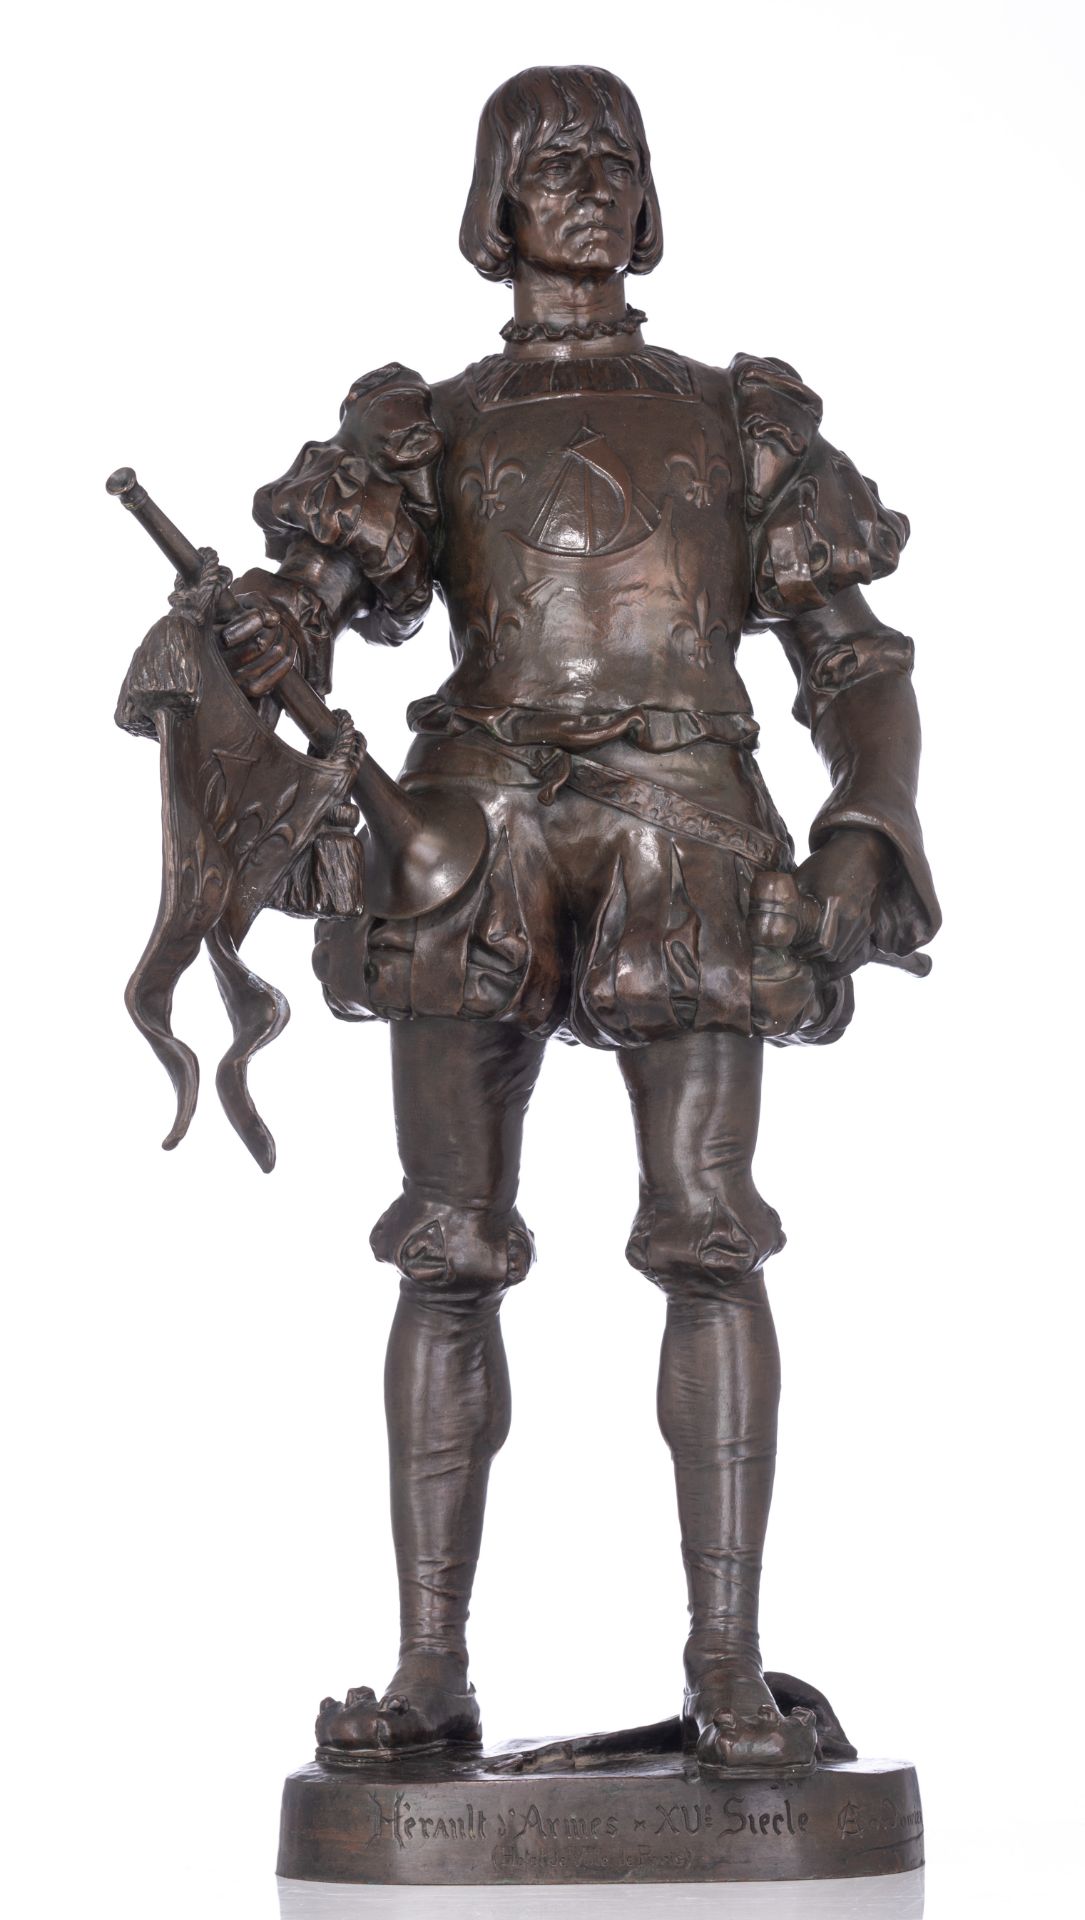 Cordonnier A., 'Heraut d'Armes XVe SiŠcle (Hotel de Ville de Paris)', patinated bronze, H 90 cm - Image 2 of 8